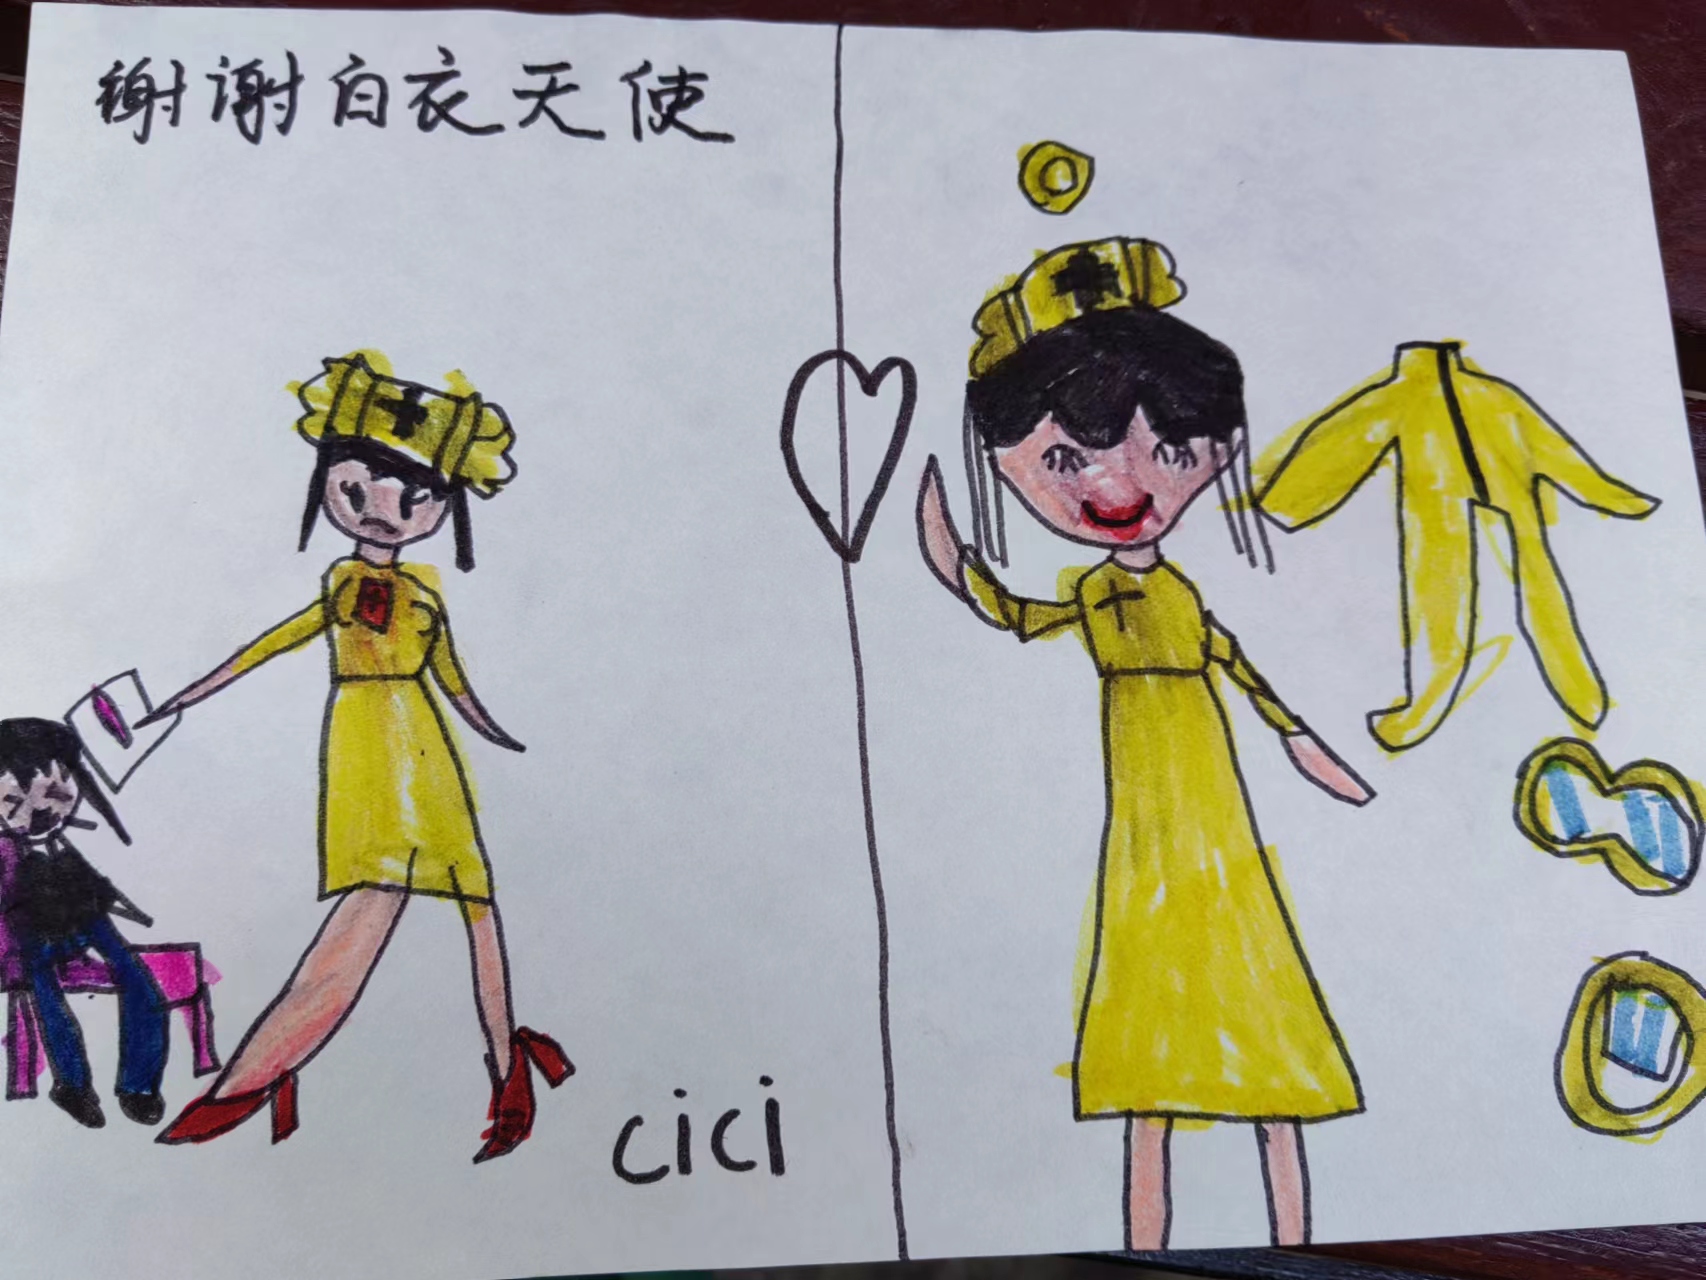 居民小朋友送给杨丽华的爱心画。